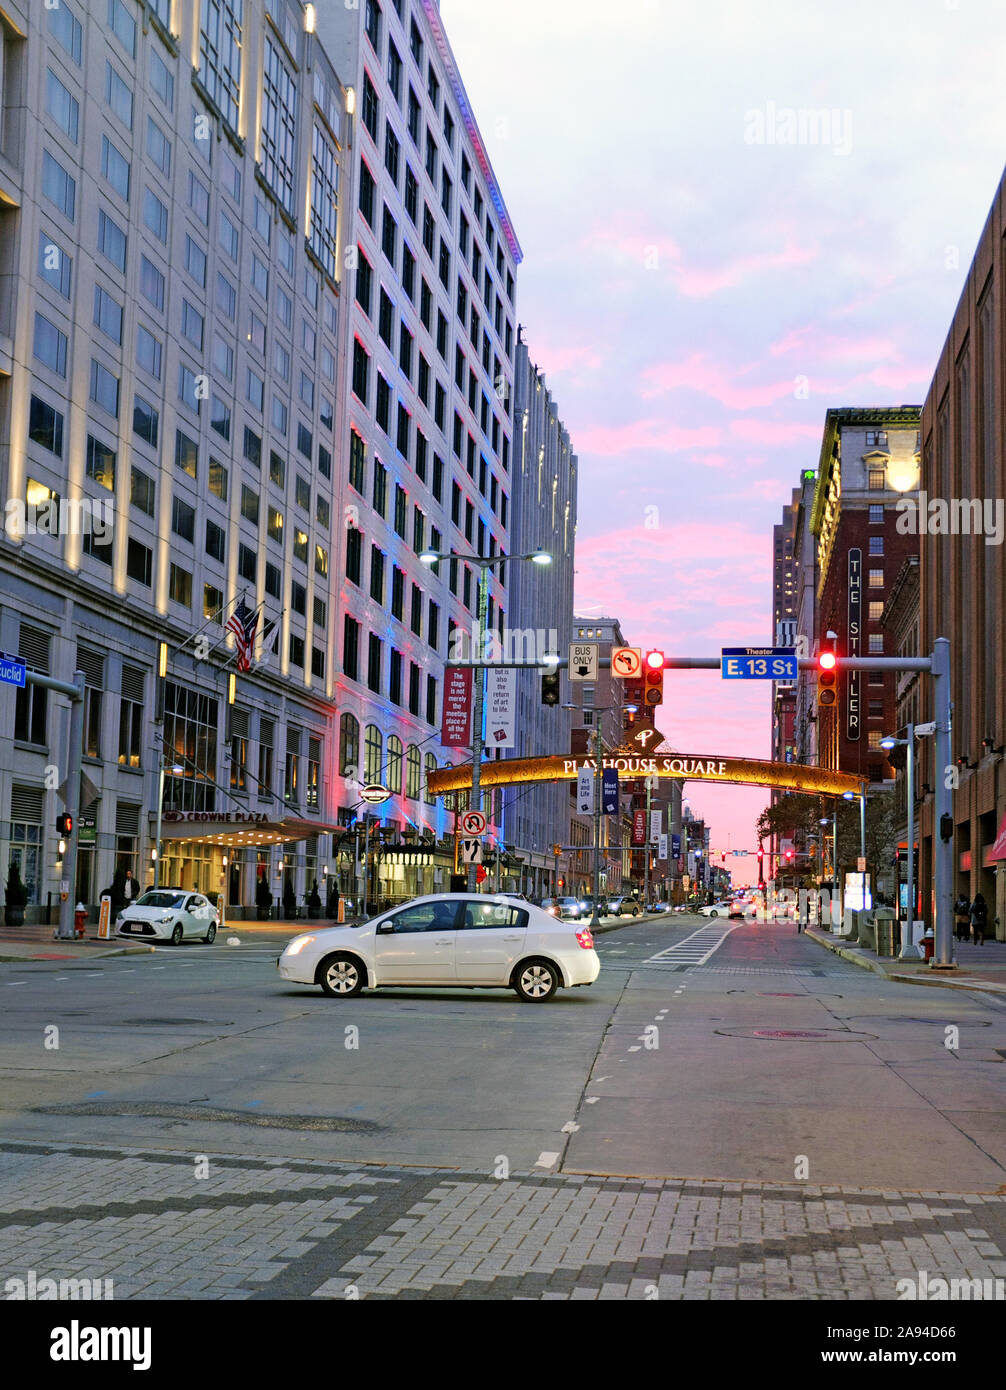 Un coucher de soleil pourpre à l'ouest de l'avenue Euclid vers le bas dans le centre-ville de Cleveland, Ohio, USA de la Playhouse Square Theatre district Banque D'Images